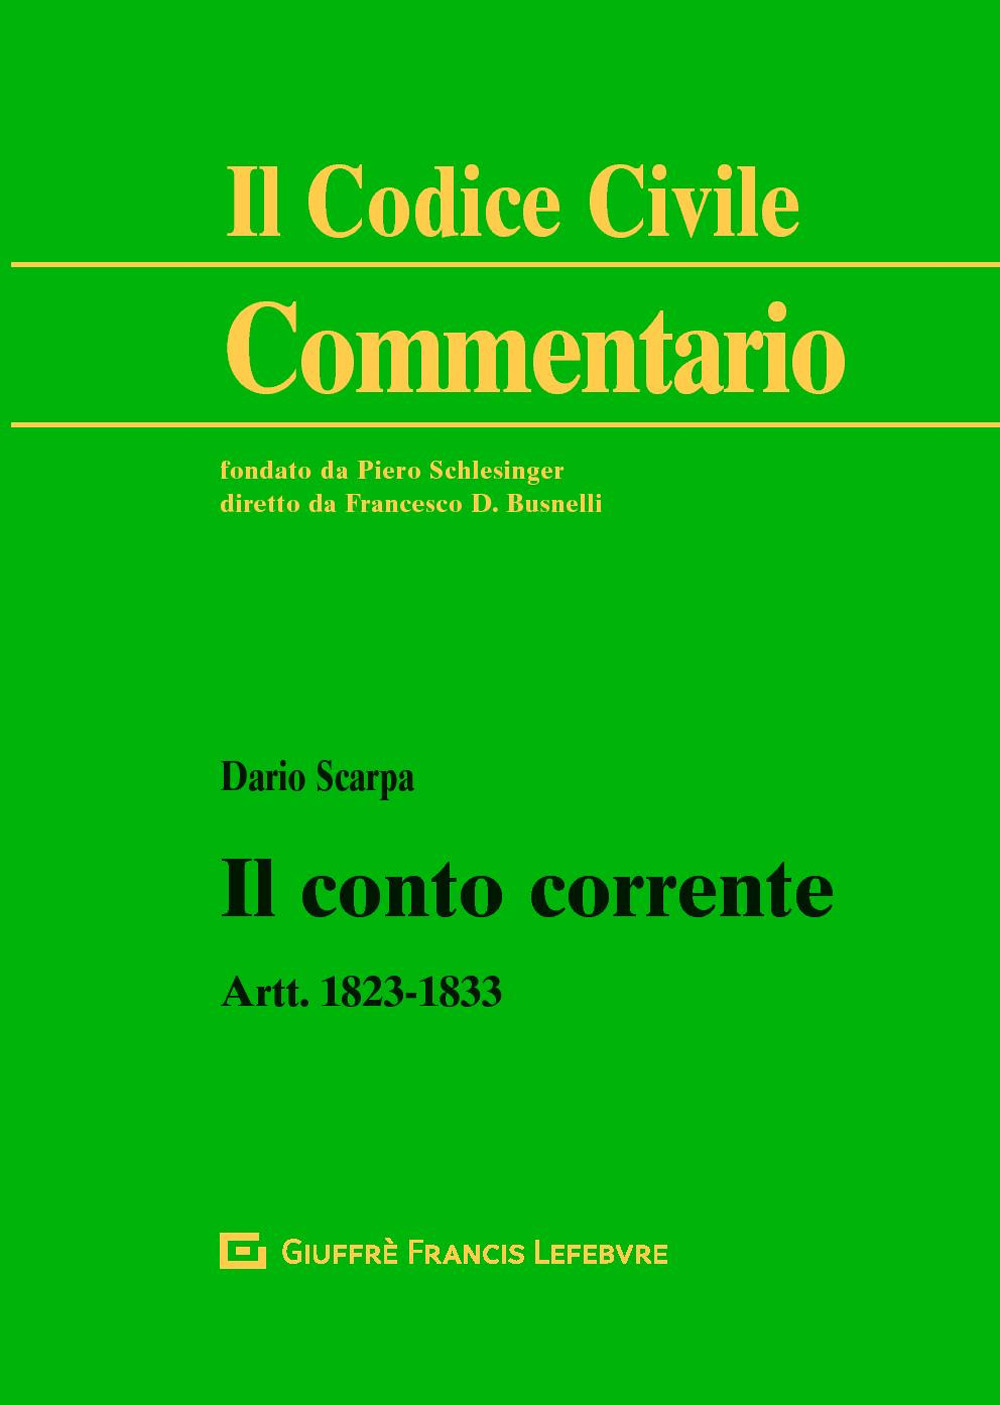 Image of Il conto corrente. Artt. 1823-1833